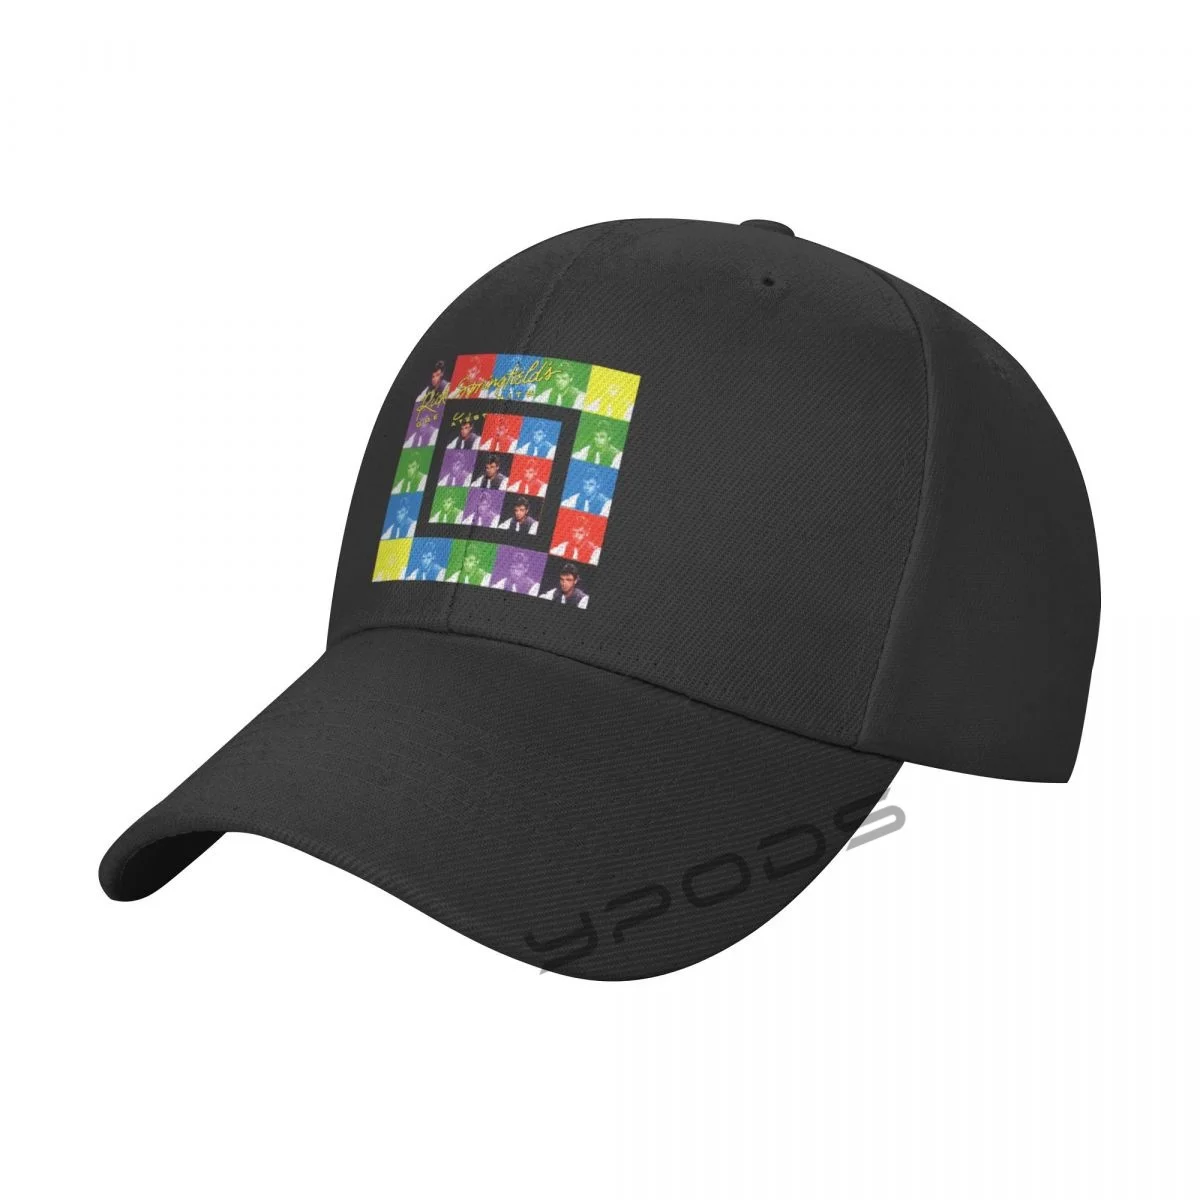 

Rick Springfield New Baseball Caps for Men Cap Women Hat Snapback Casual Cap Casquette Hats